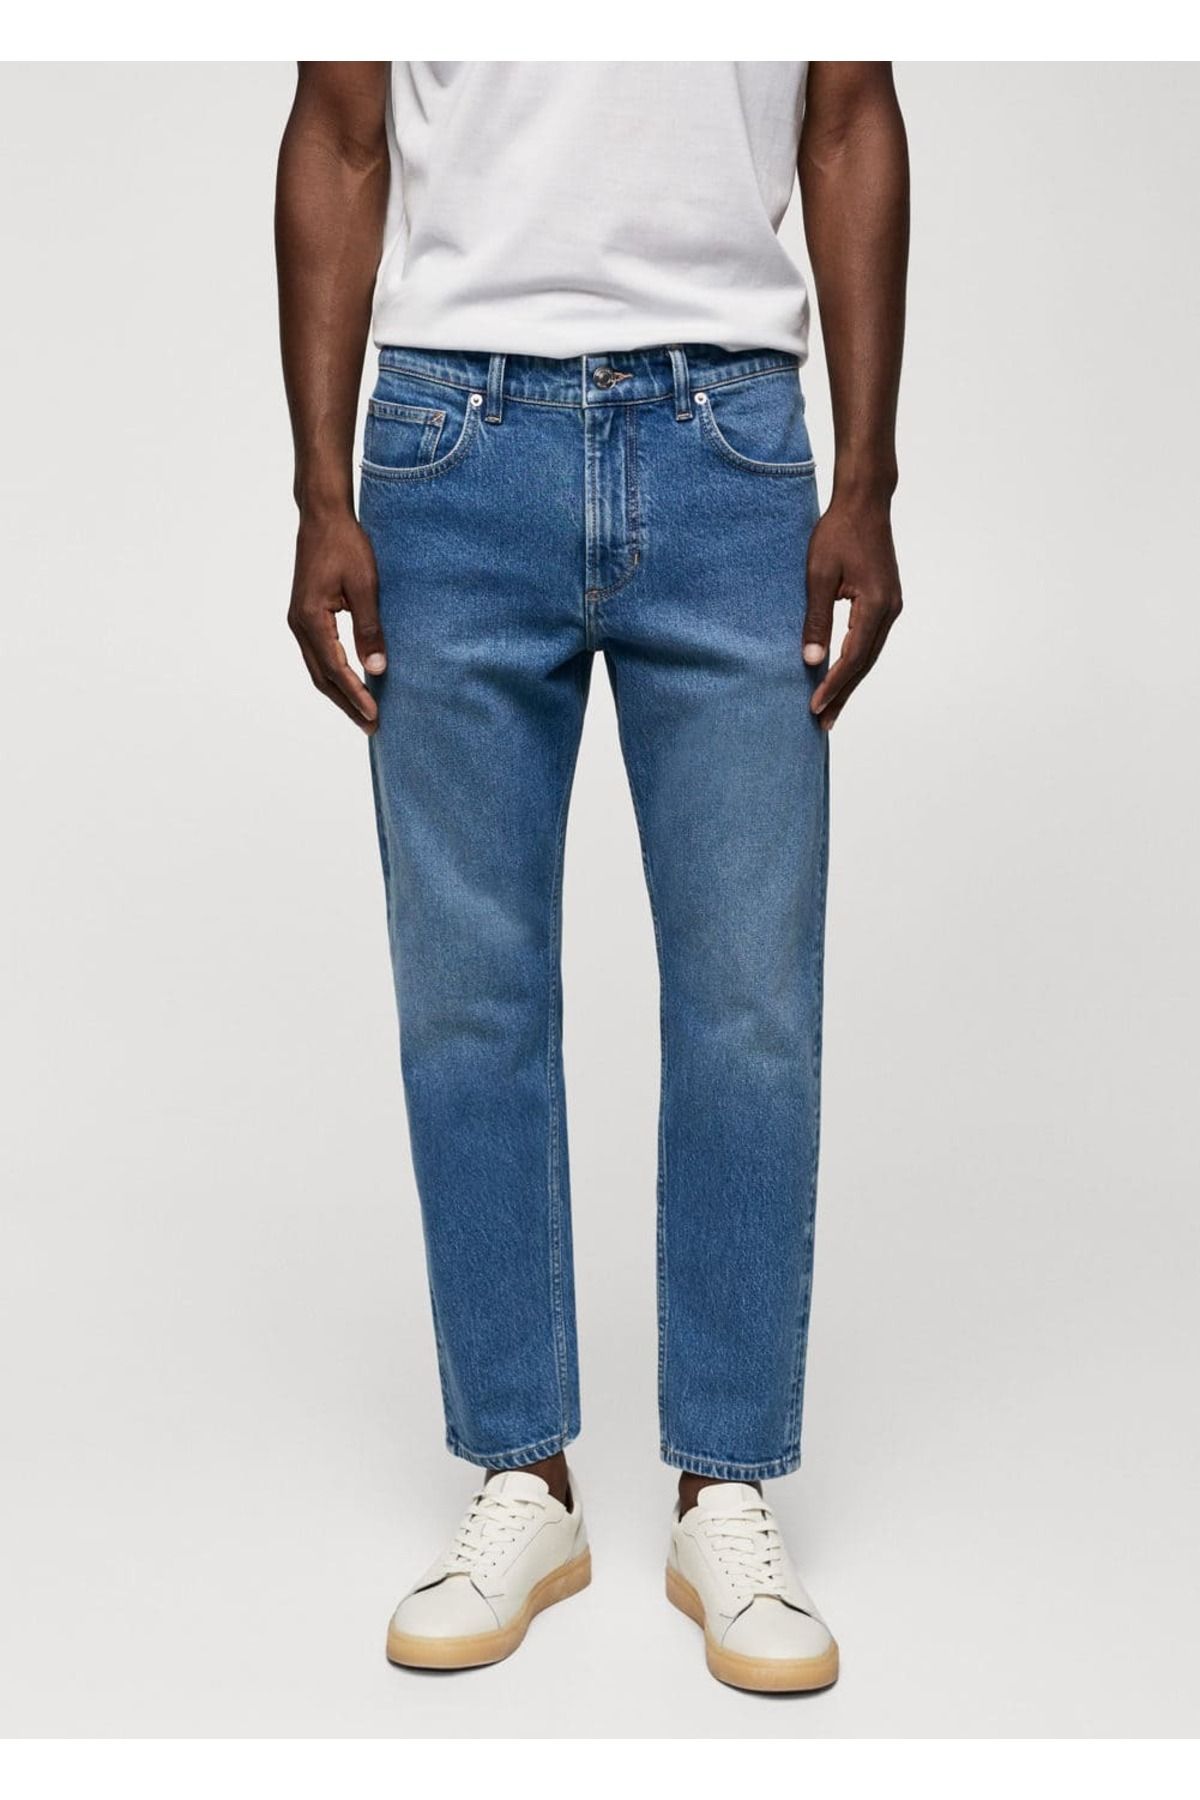 MANGO Man Ben model tapered cropped jean